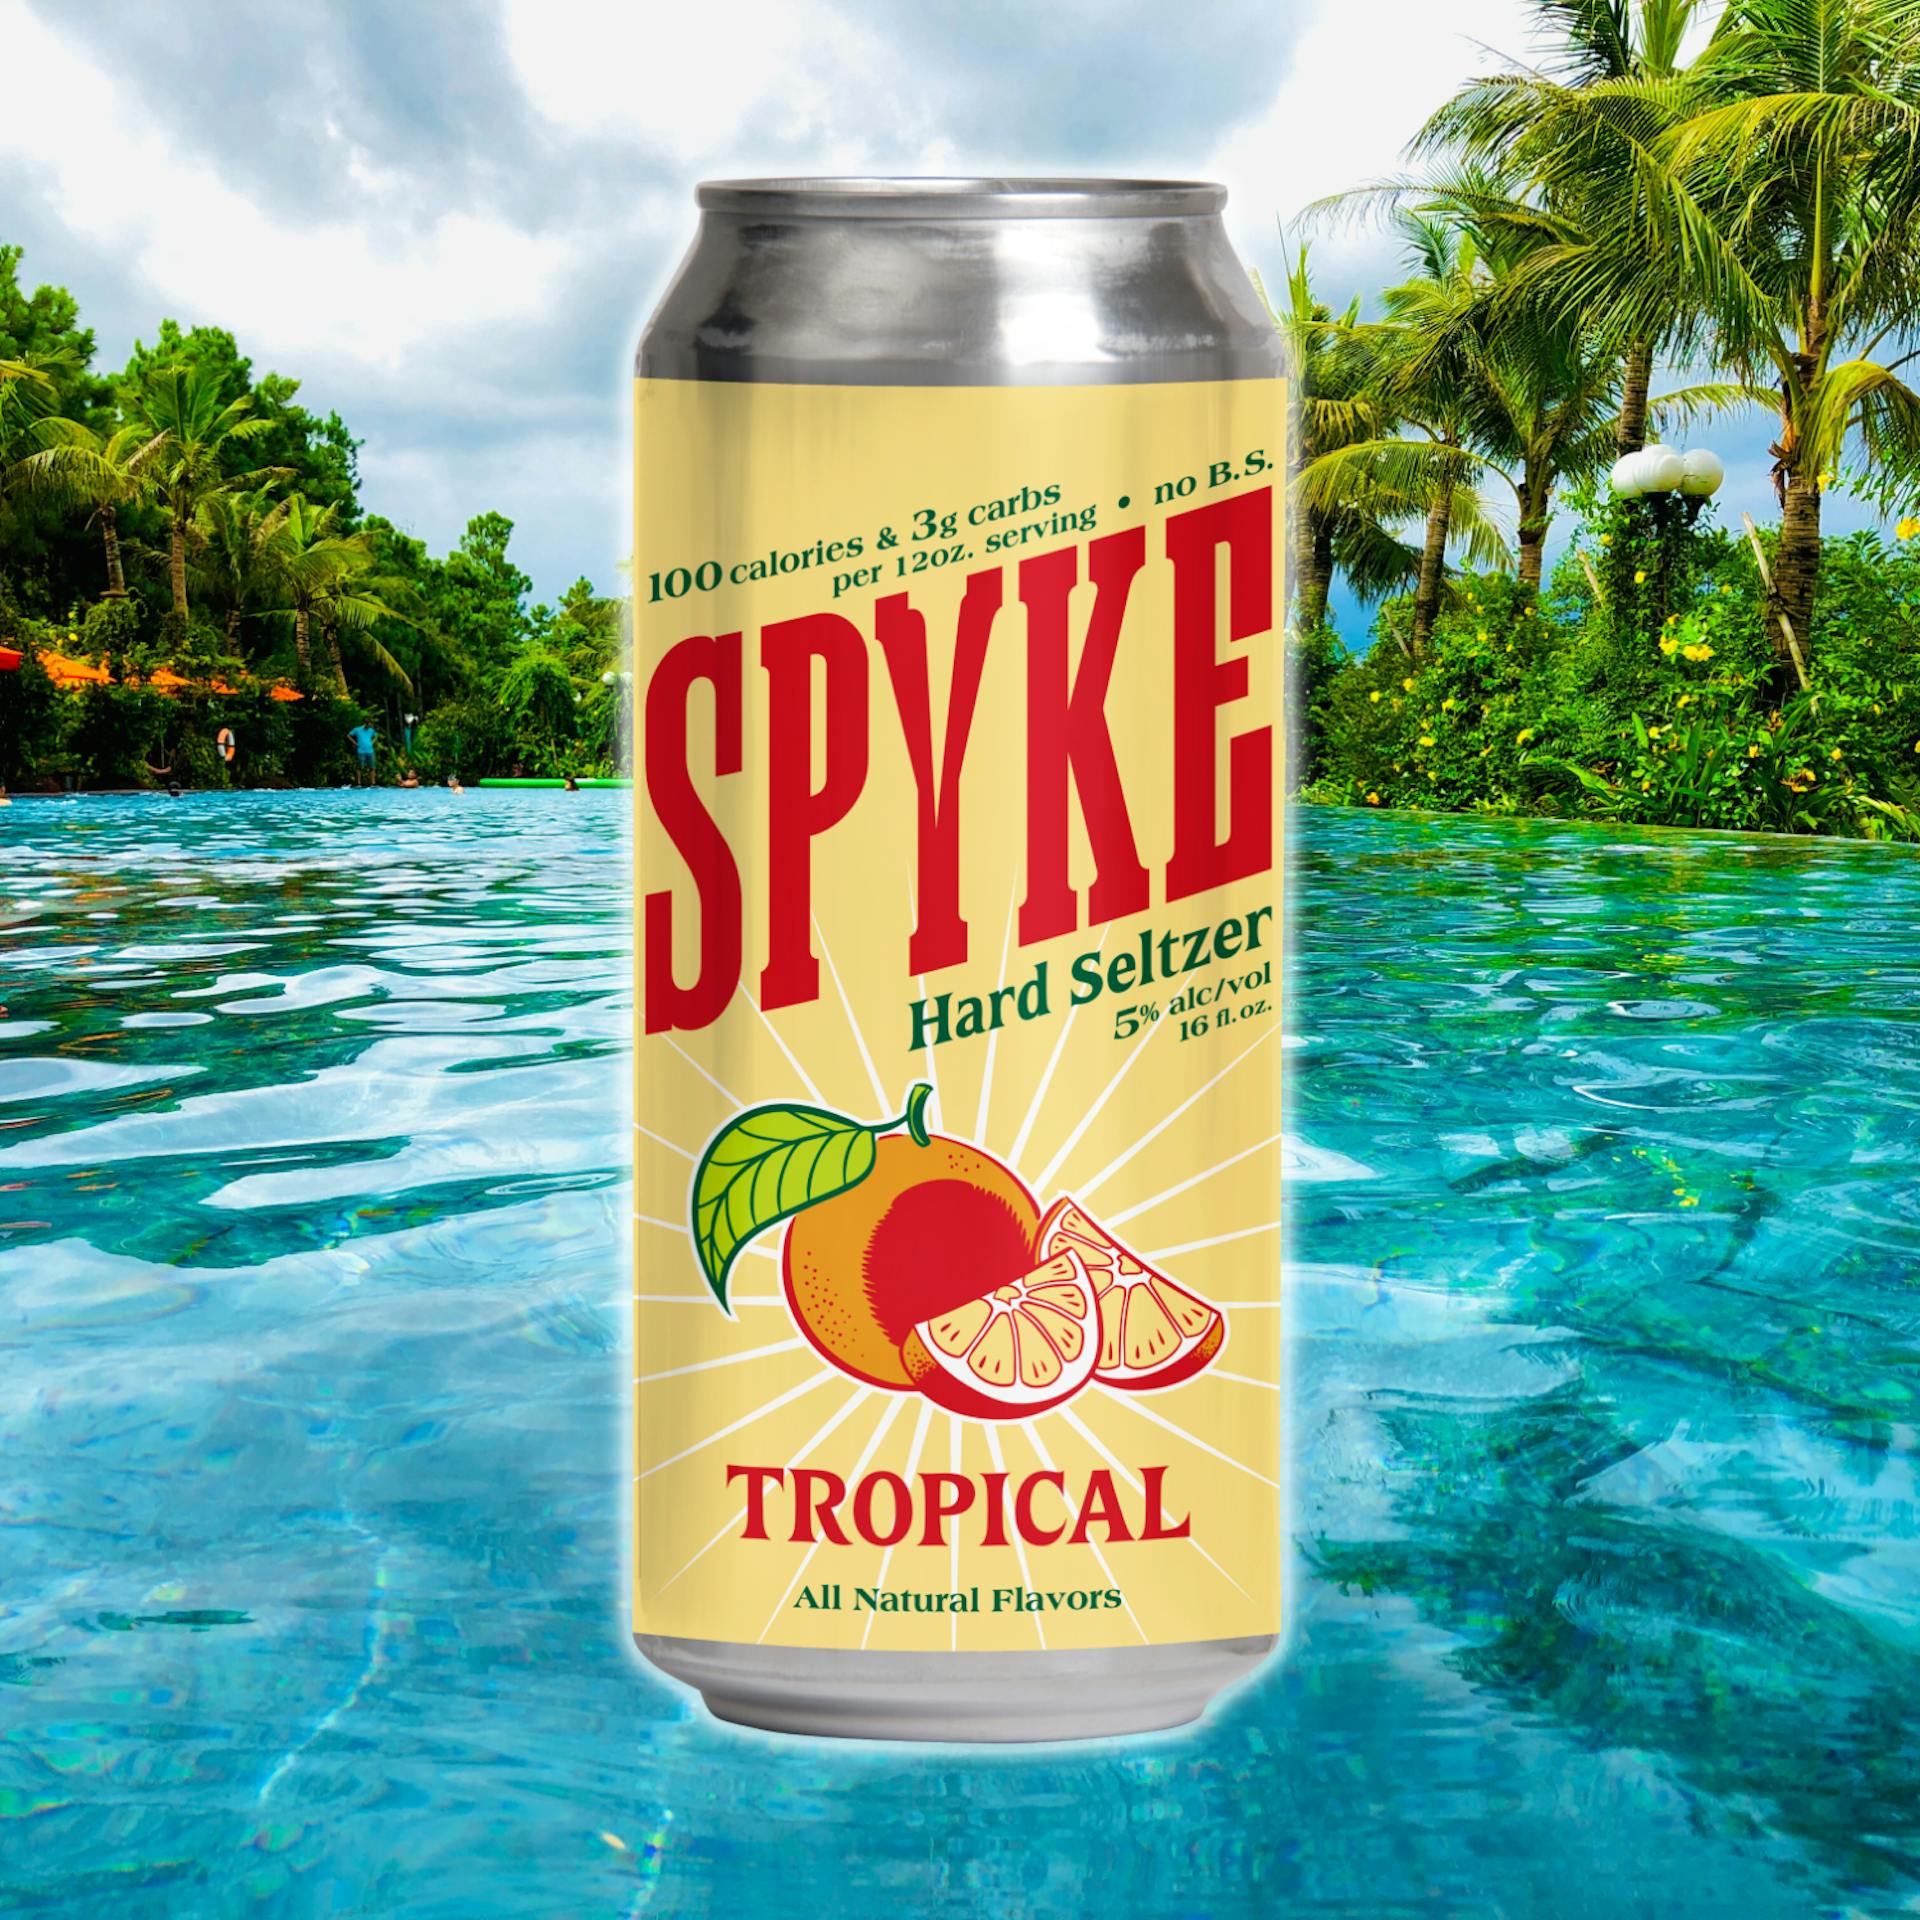 Spyke-Tropical-photoBG